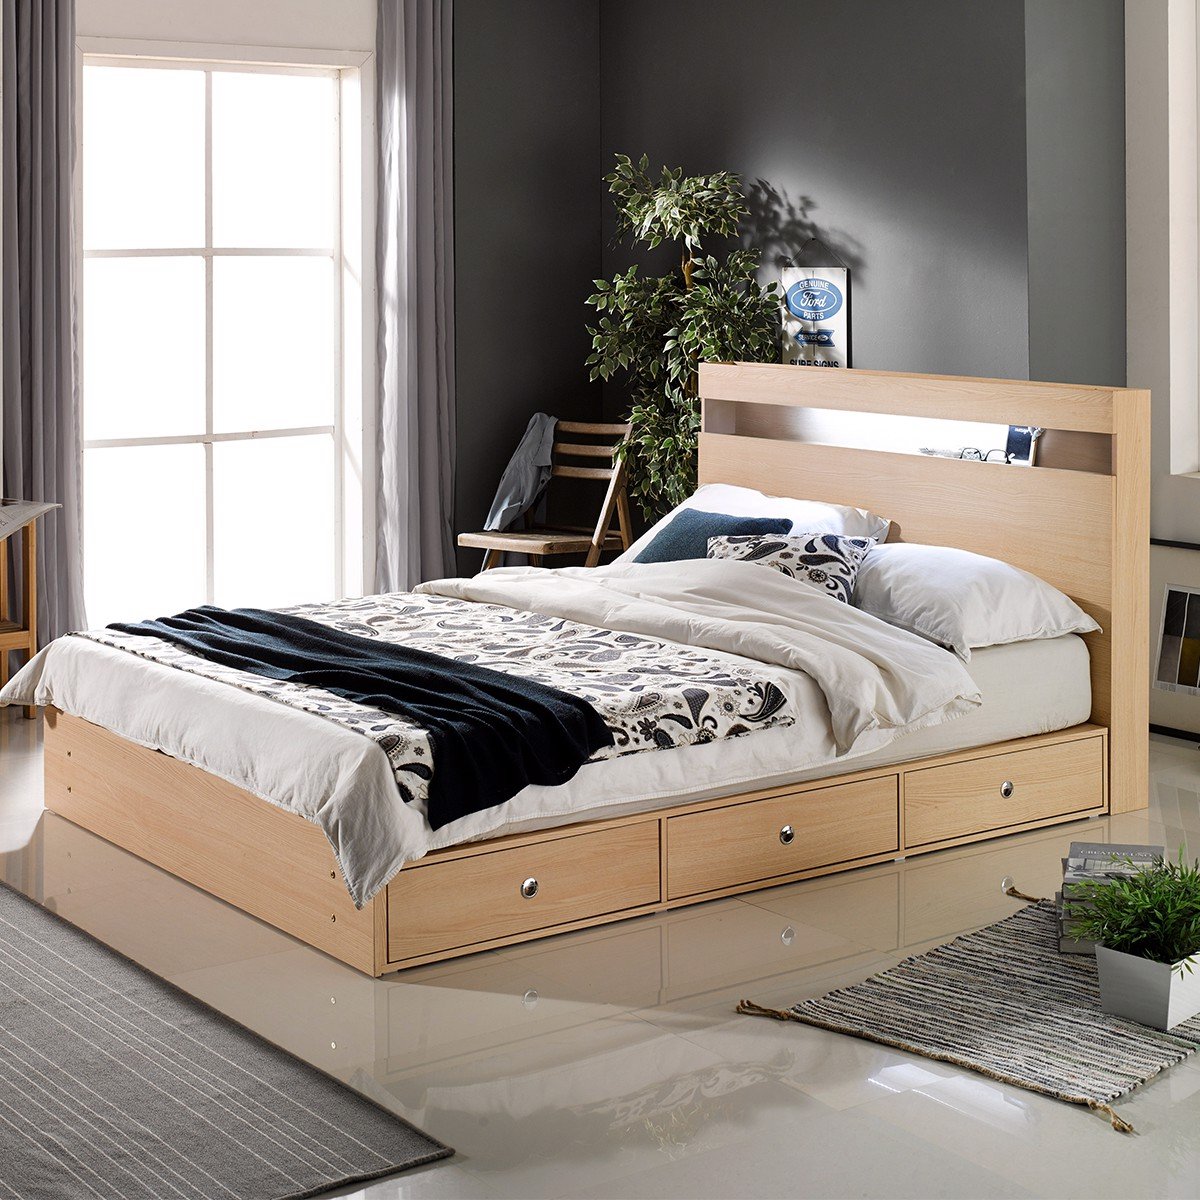 Giường đơn 120cm là lựa chọn hoàn hảo cho phòng ngủ nhỏ. Với kích thước vừa đủ, giường không chiếm quá nhiều diện tích, giúp bạn dễ dàng bố trí các đồ nội thất khác. Tựa như một bức tranh trang nhã, hình ảnh này sẽ khiến bạn muốn khám phá thêm và đắm chìm trong không gian nghỉ ngơi tuyệt vời.